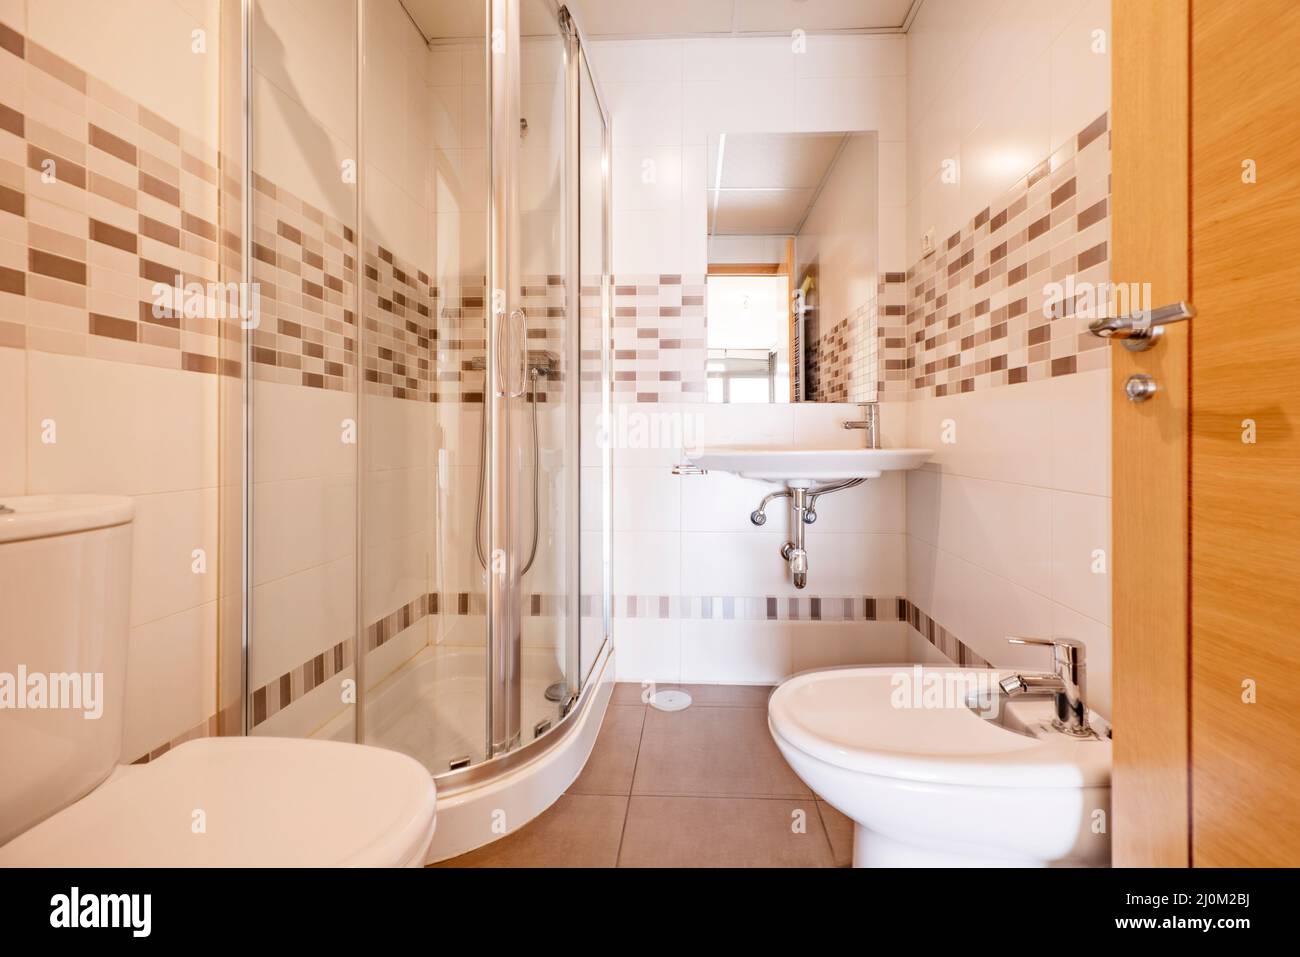 Badezimmer mit Waschbecken, Bidet, Viertelkreisduschkabine, eingelassenem  Spiegel und breiter Bordüre Stockfotografie - Alamy